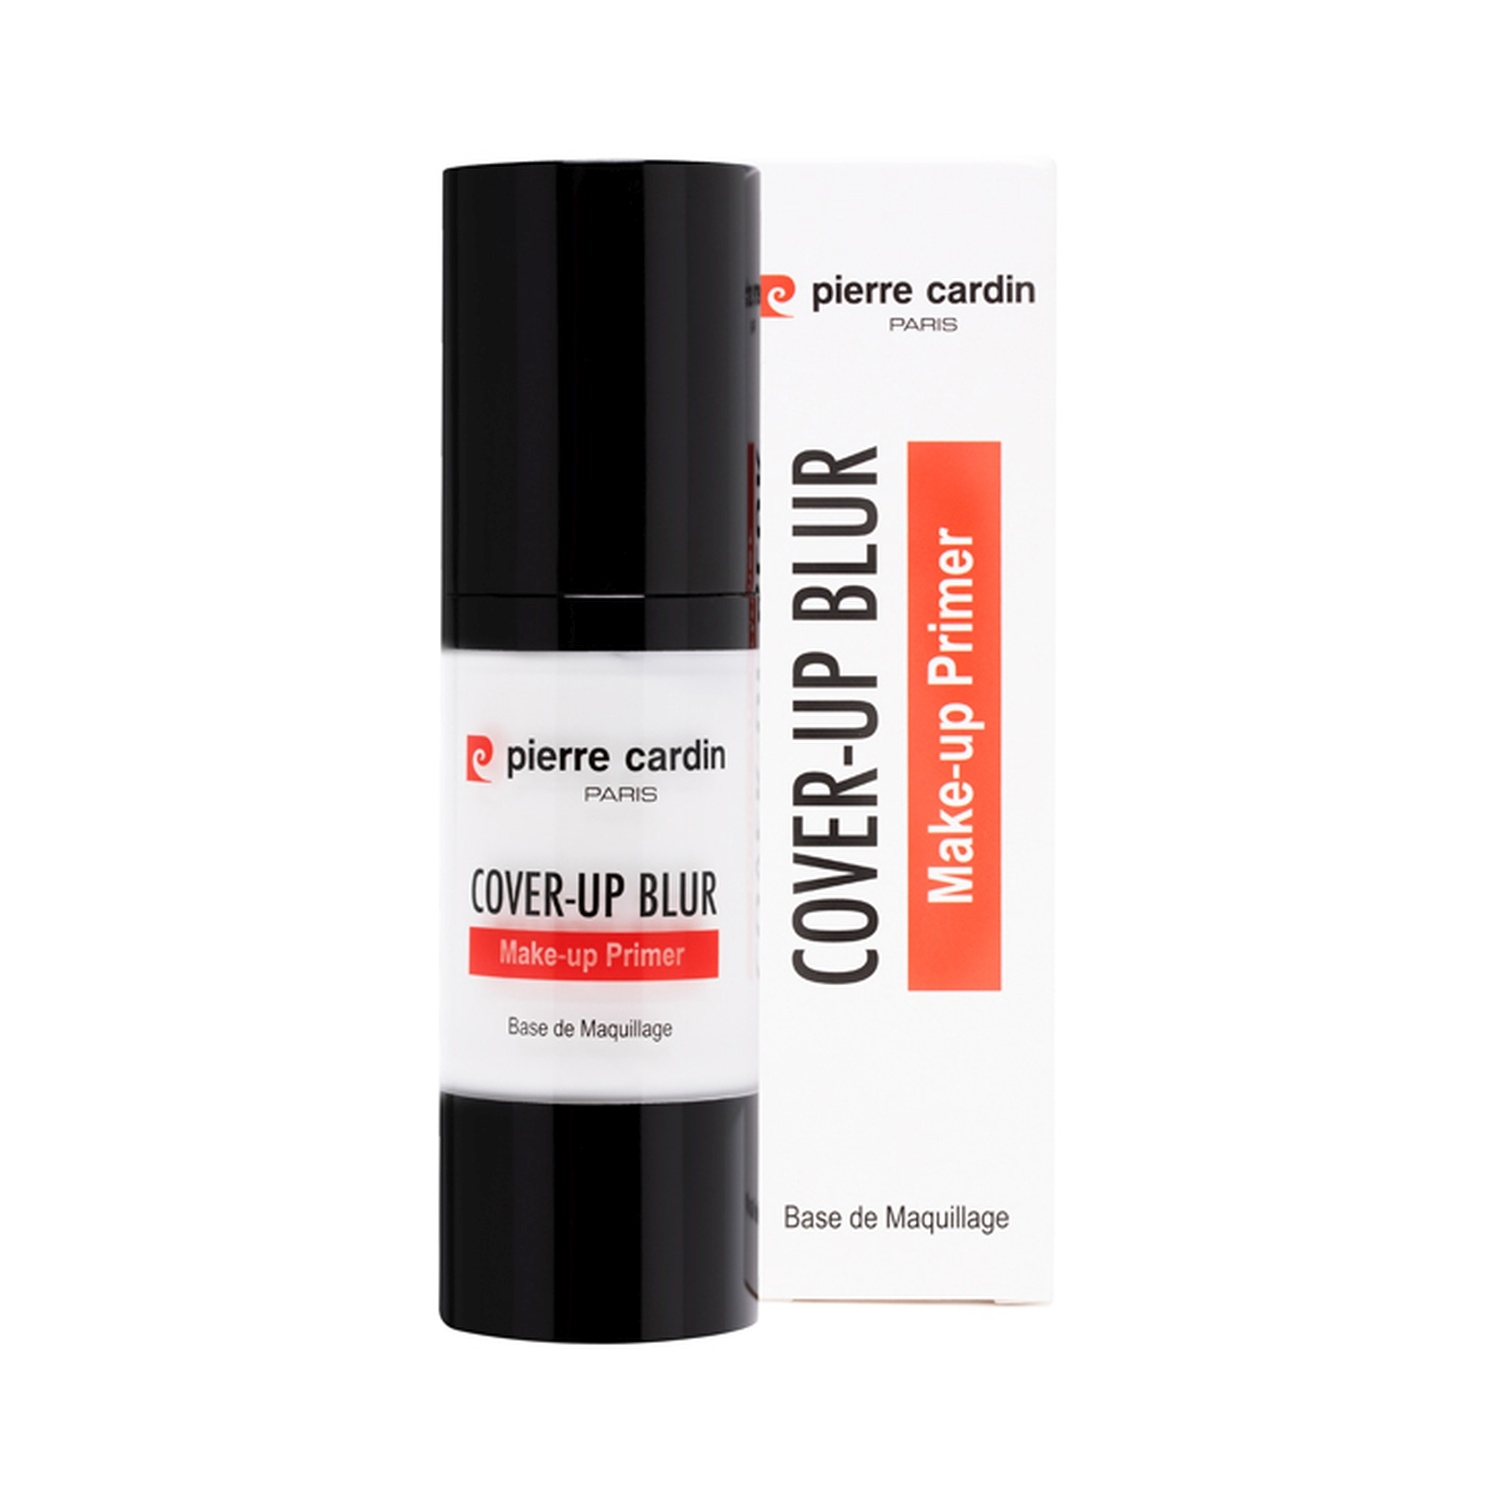 Pierre Cardin Paris Cover Up Blur Makeup Primer (30ml)